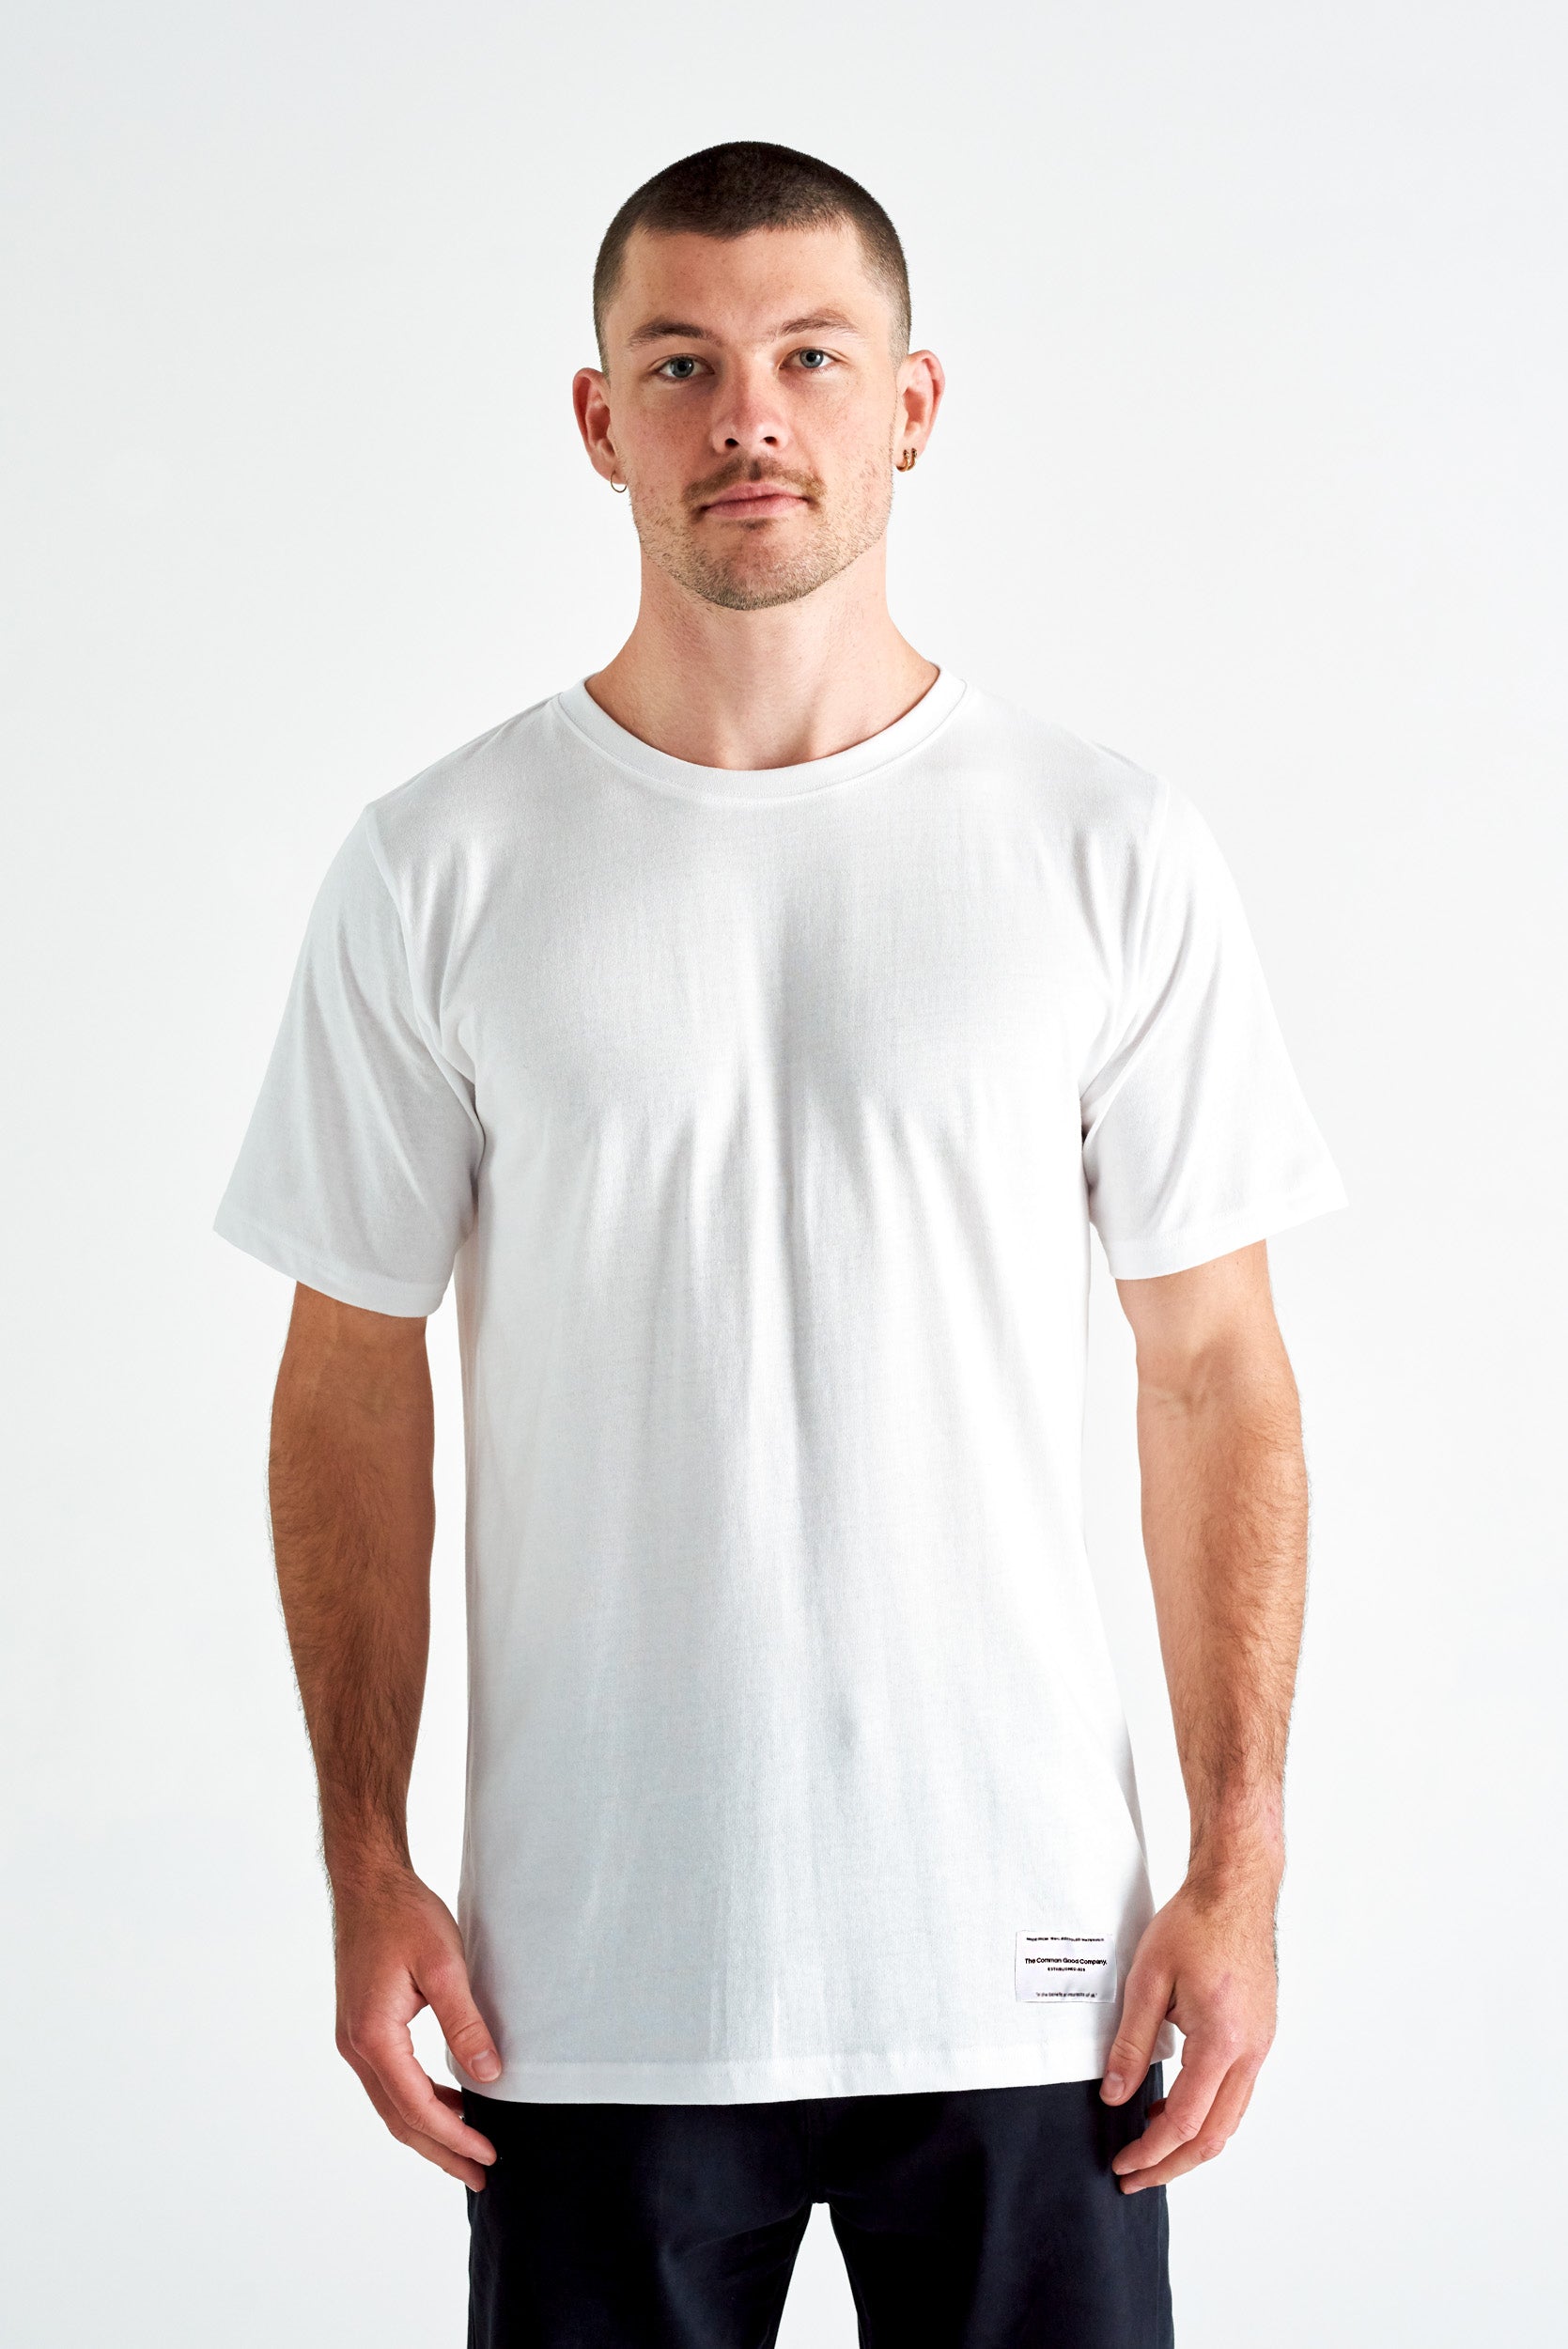 John Citizen White T-shirt - Patch Adams